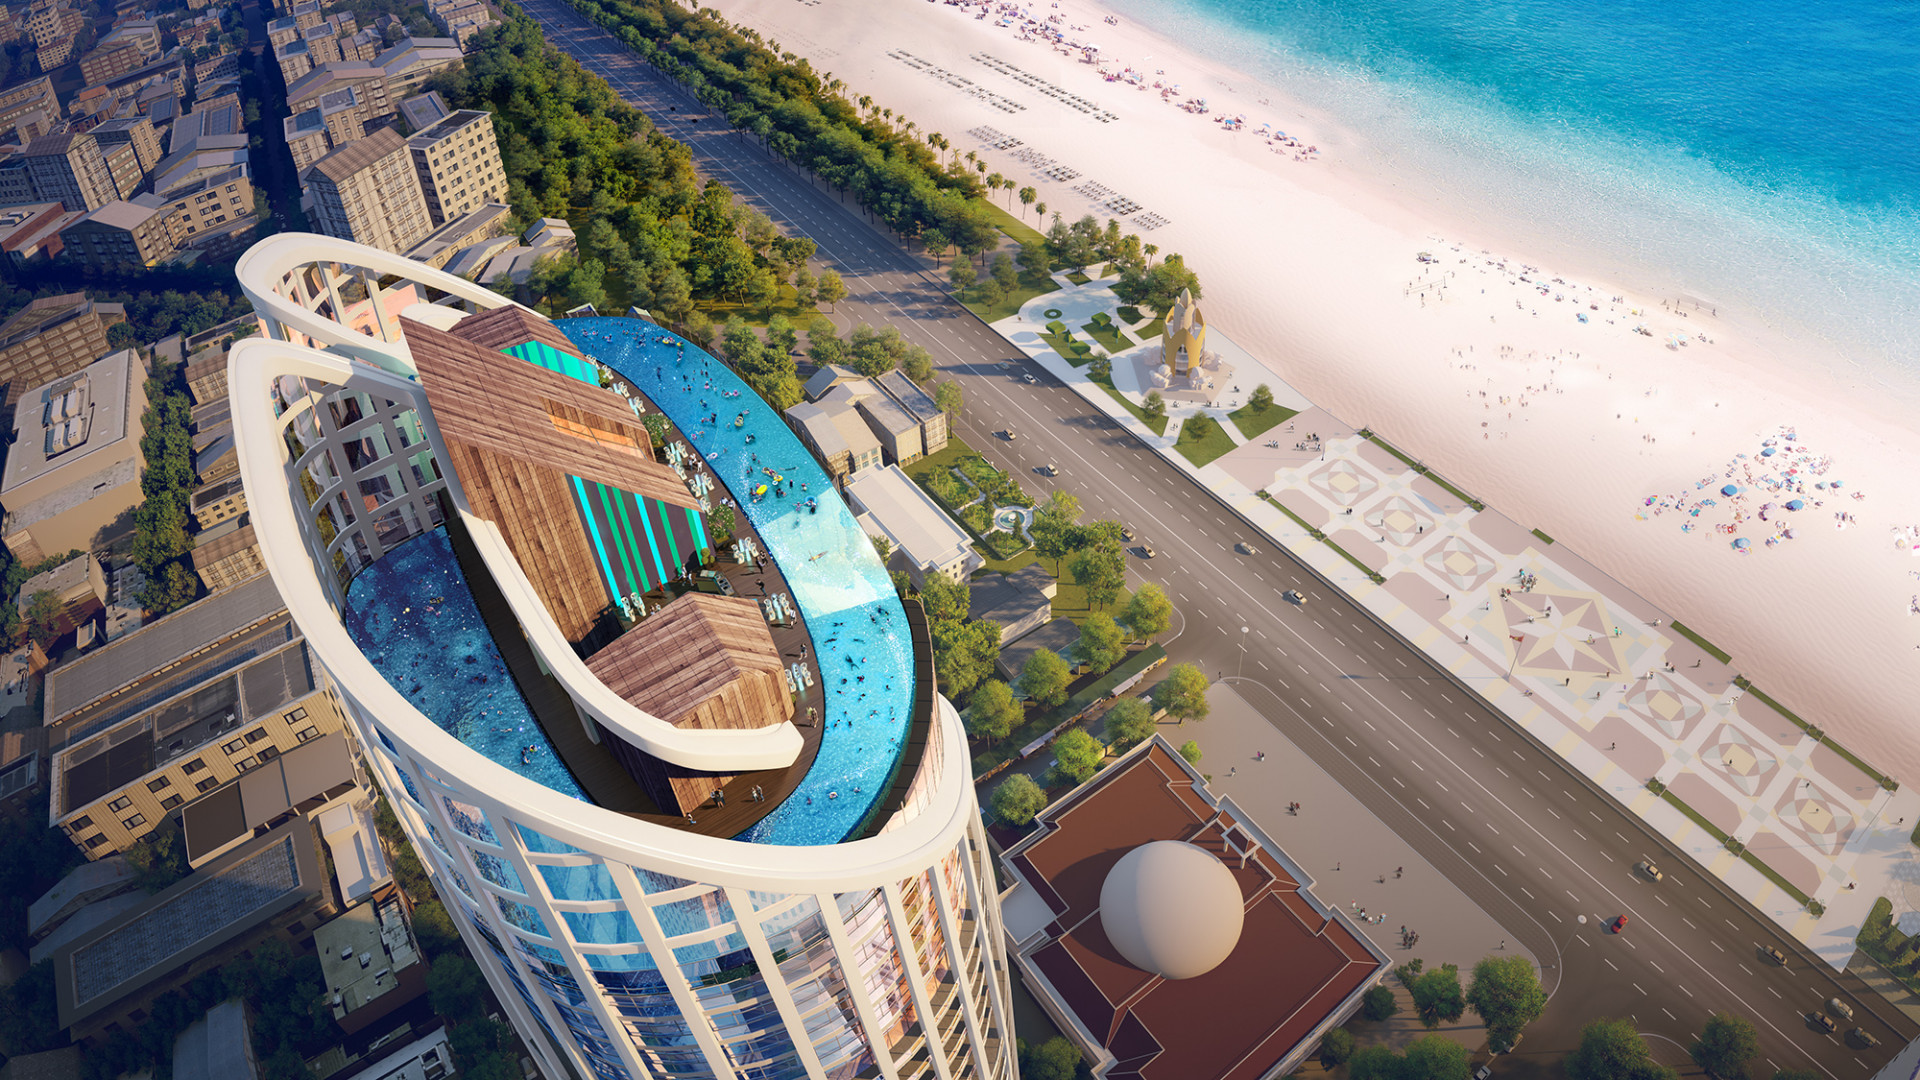 Bể bơi nước mặn vô cực trong suốt nằm ở tầng cao nhất dự án Panorama trở thành biểu tượng du lịch mới của thành phố Nha Trang